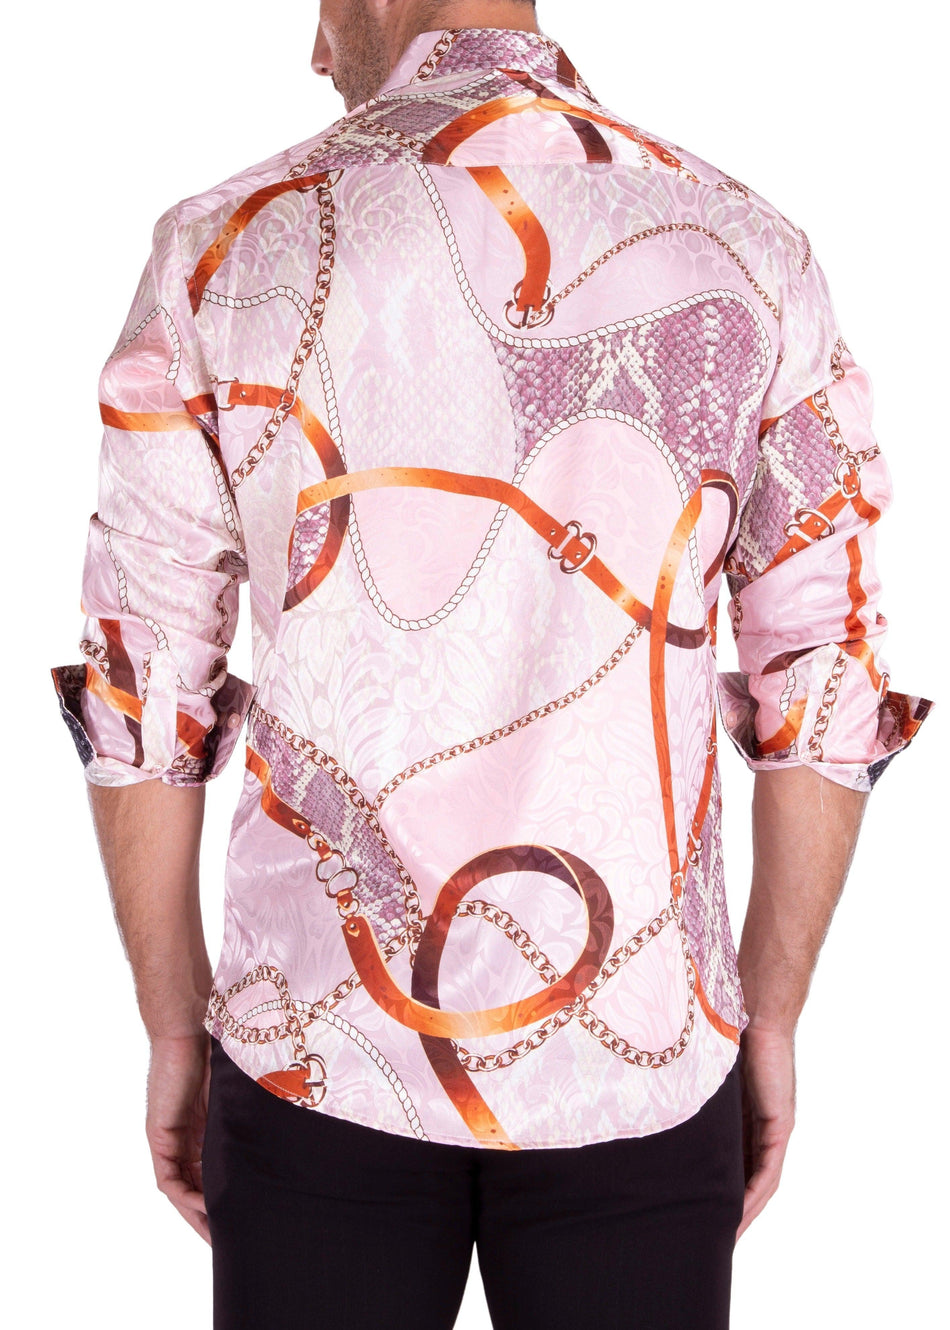 Baroque Motif Silk Texture Long Sleeve Dress Shirt Pink